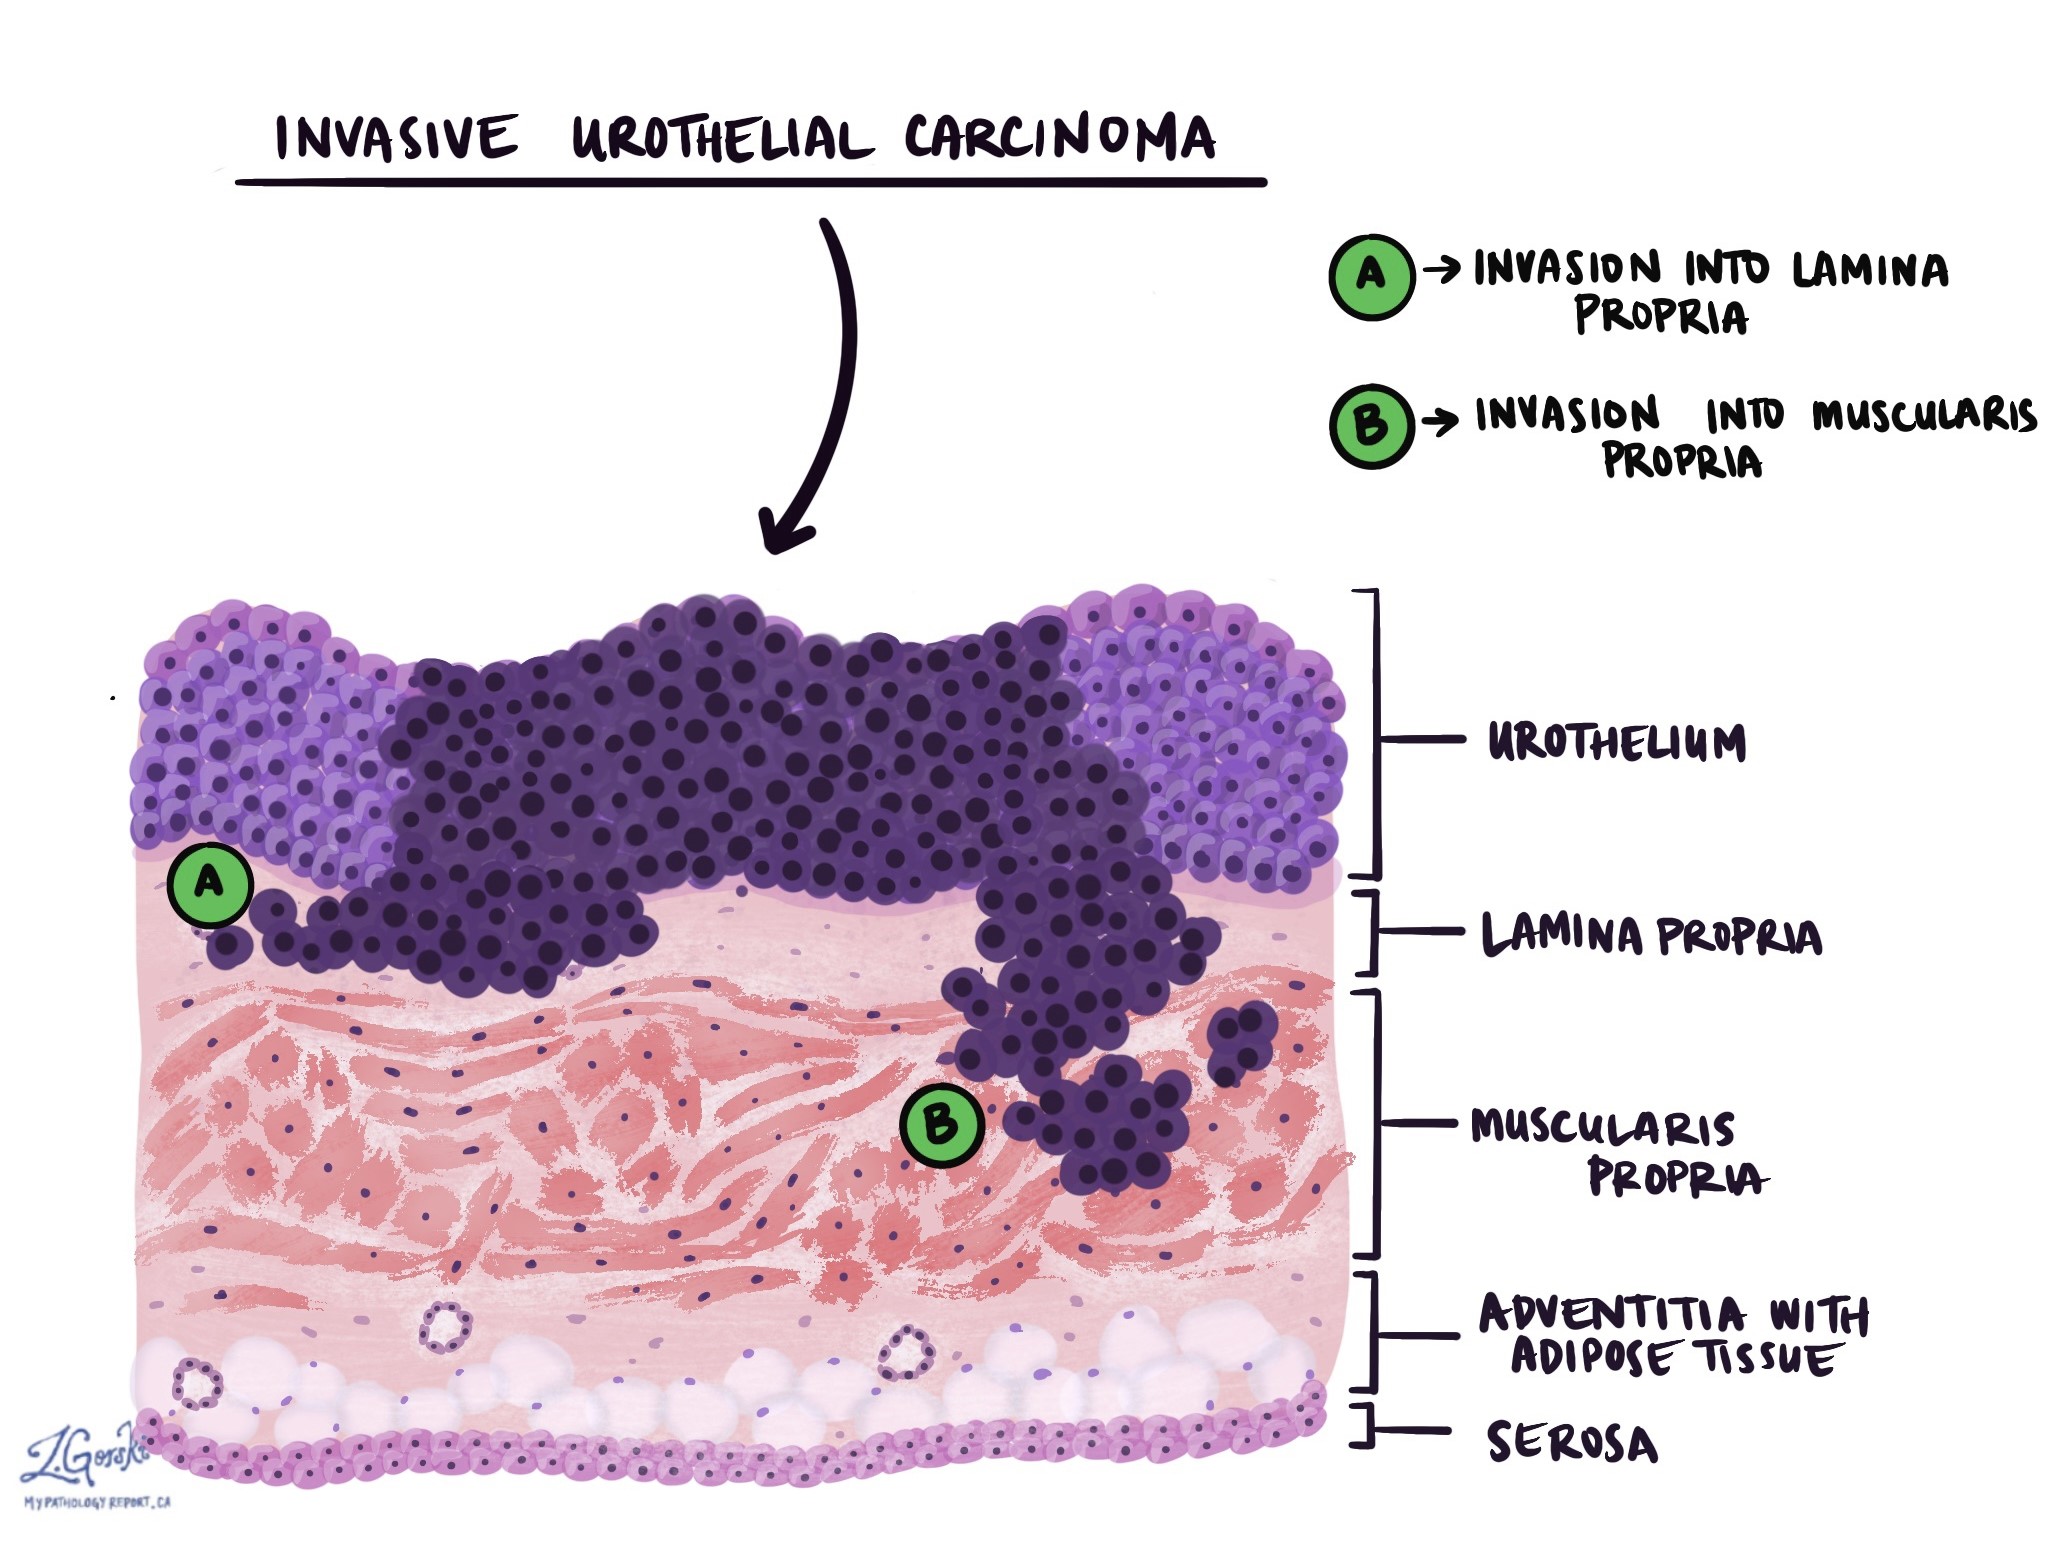 Carcinoma urotelial invasivo